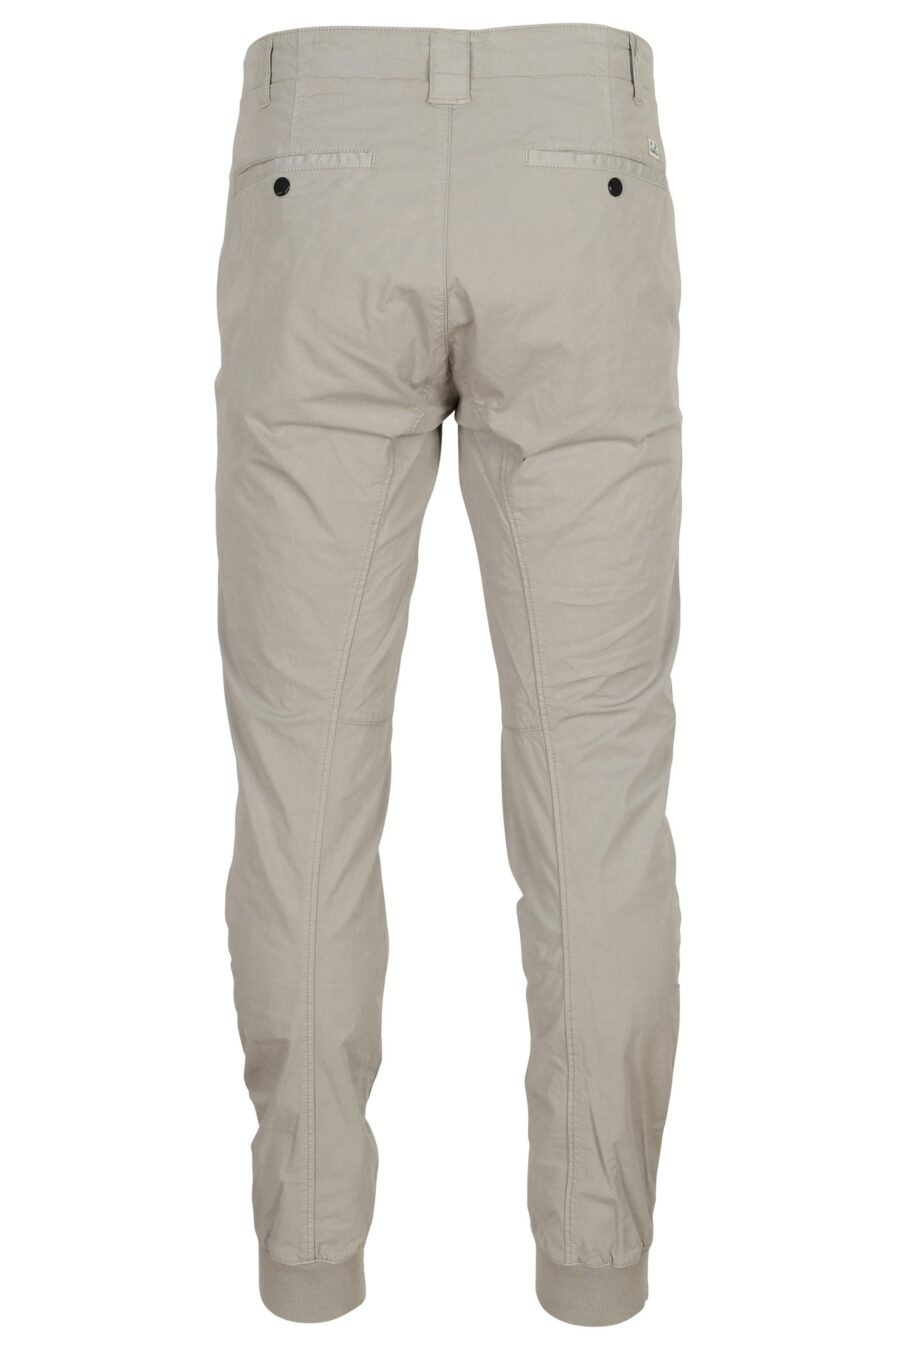 Pantalon ergonomique gris avec mini-logo - 7620943668377 1